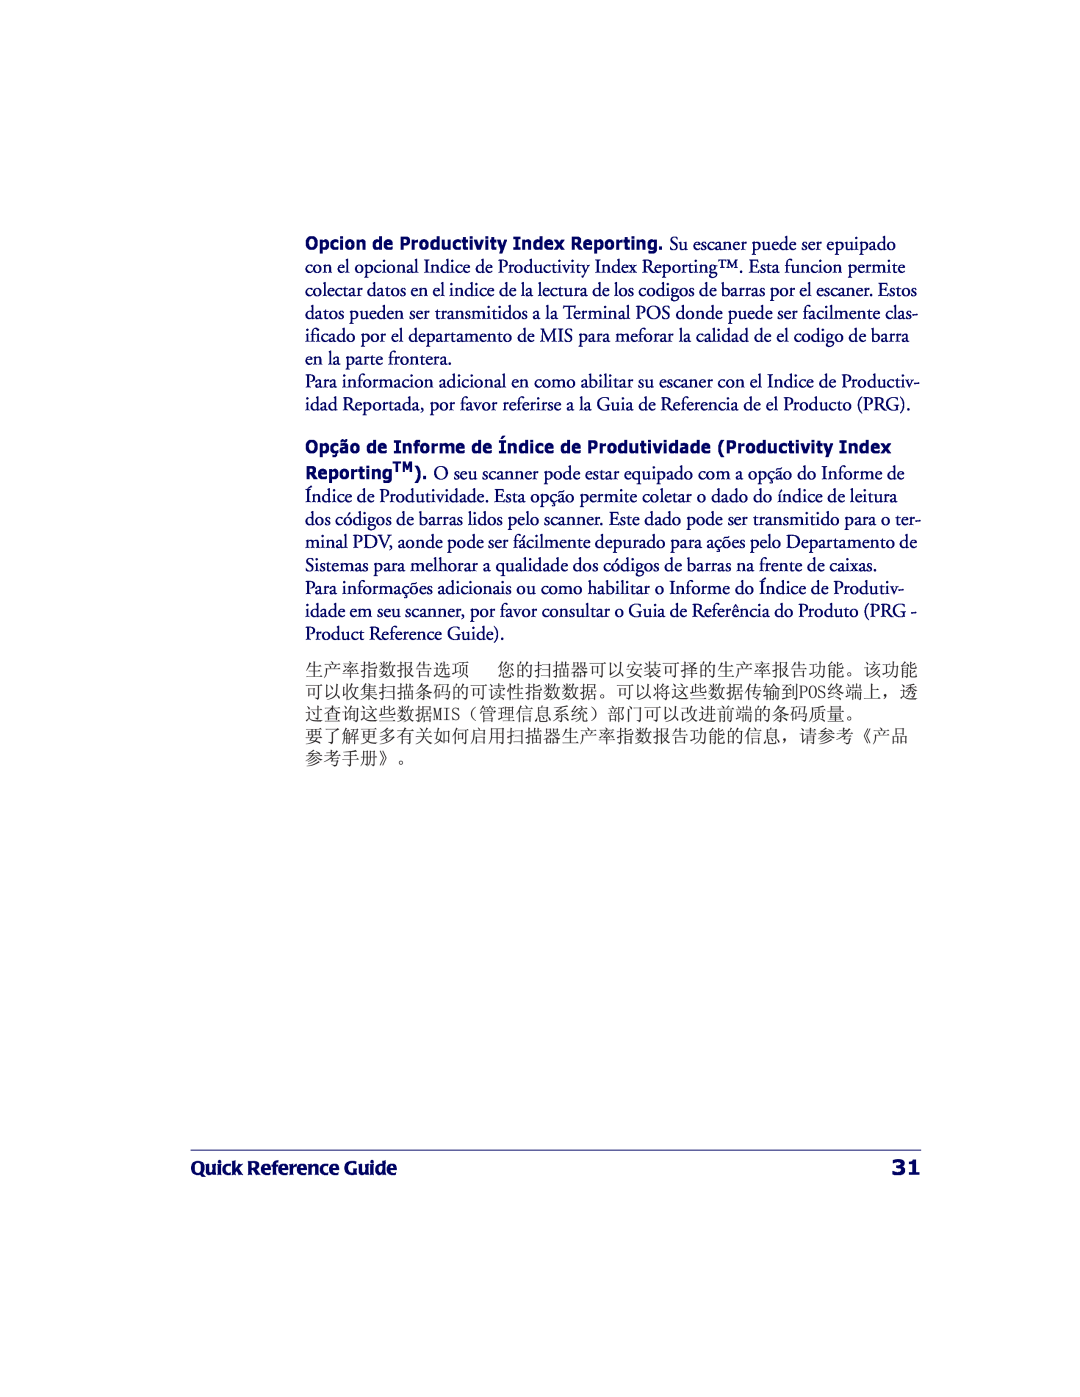 PSC 2200VS manual Quick Reference Guide, Opção de Informe de Índice de Produtividade Productivity Index 